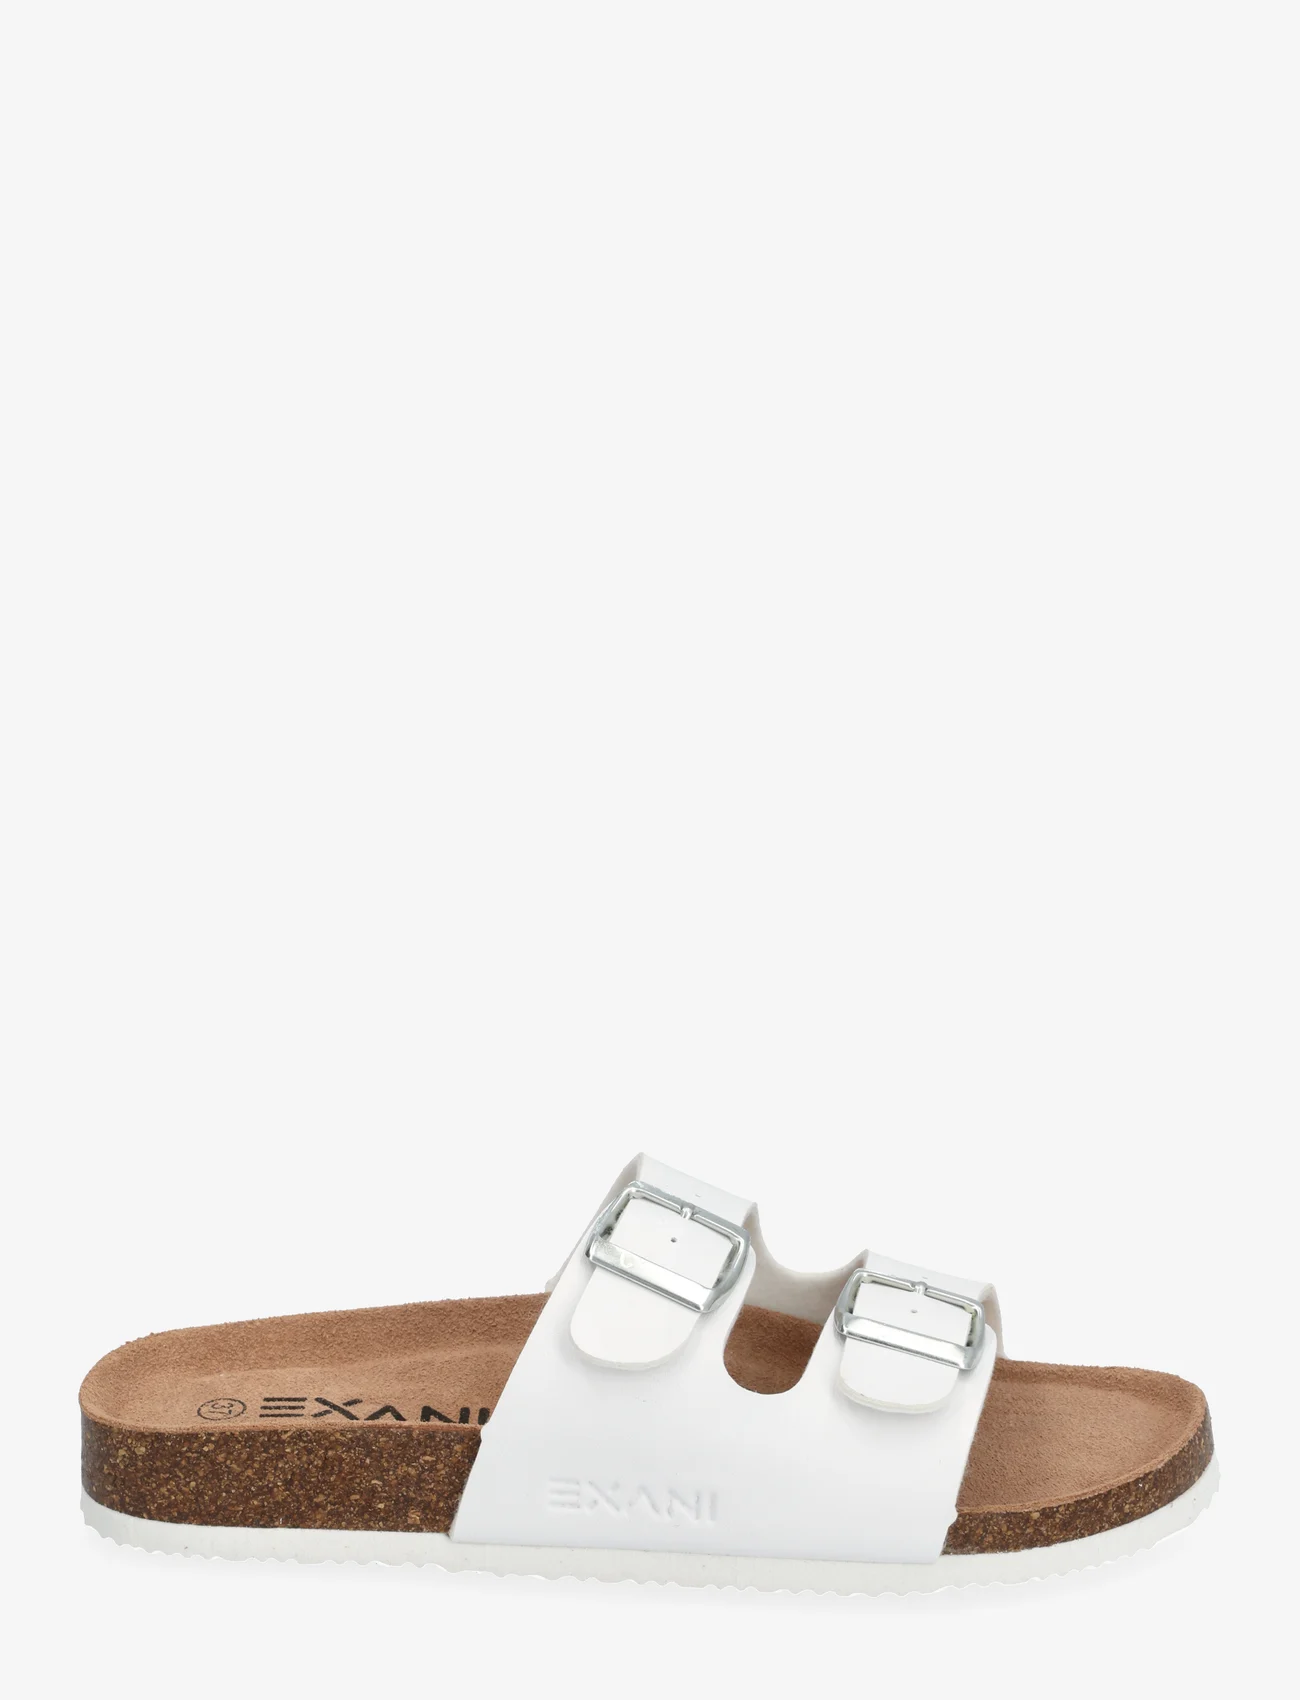 Exani - SPECTRA W - flat sandals - white - 1